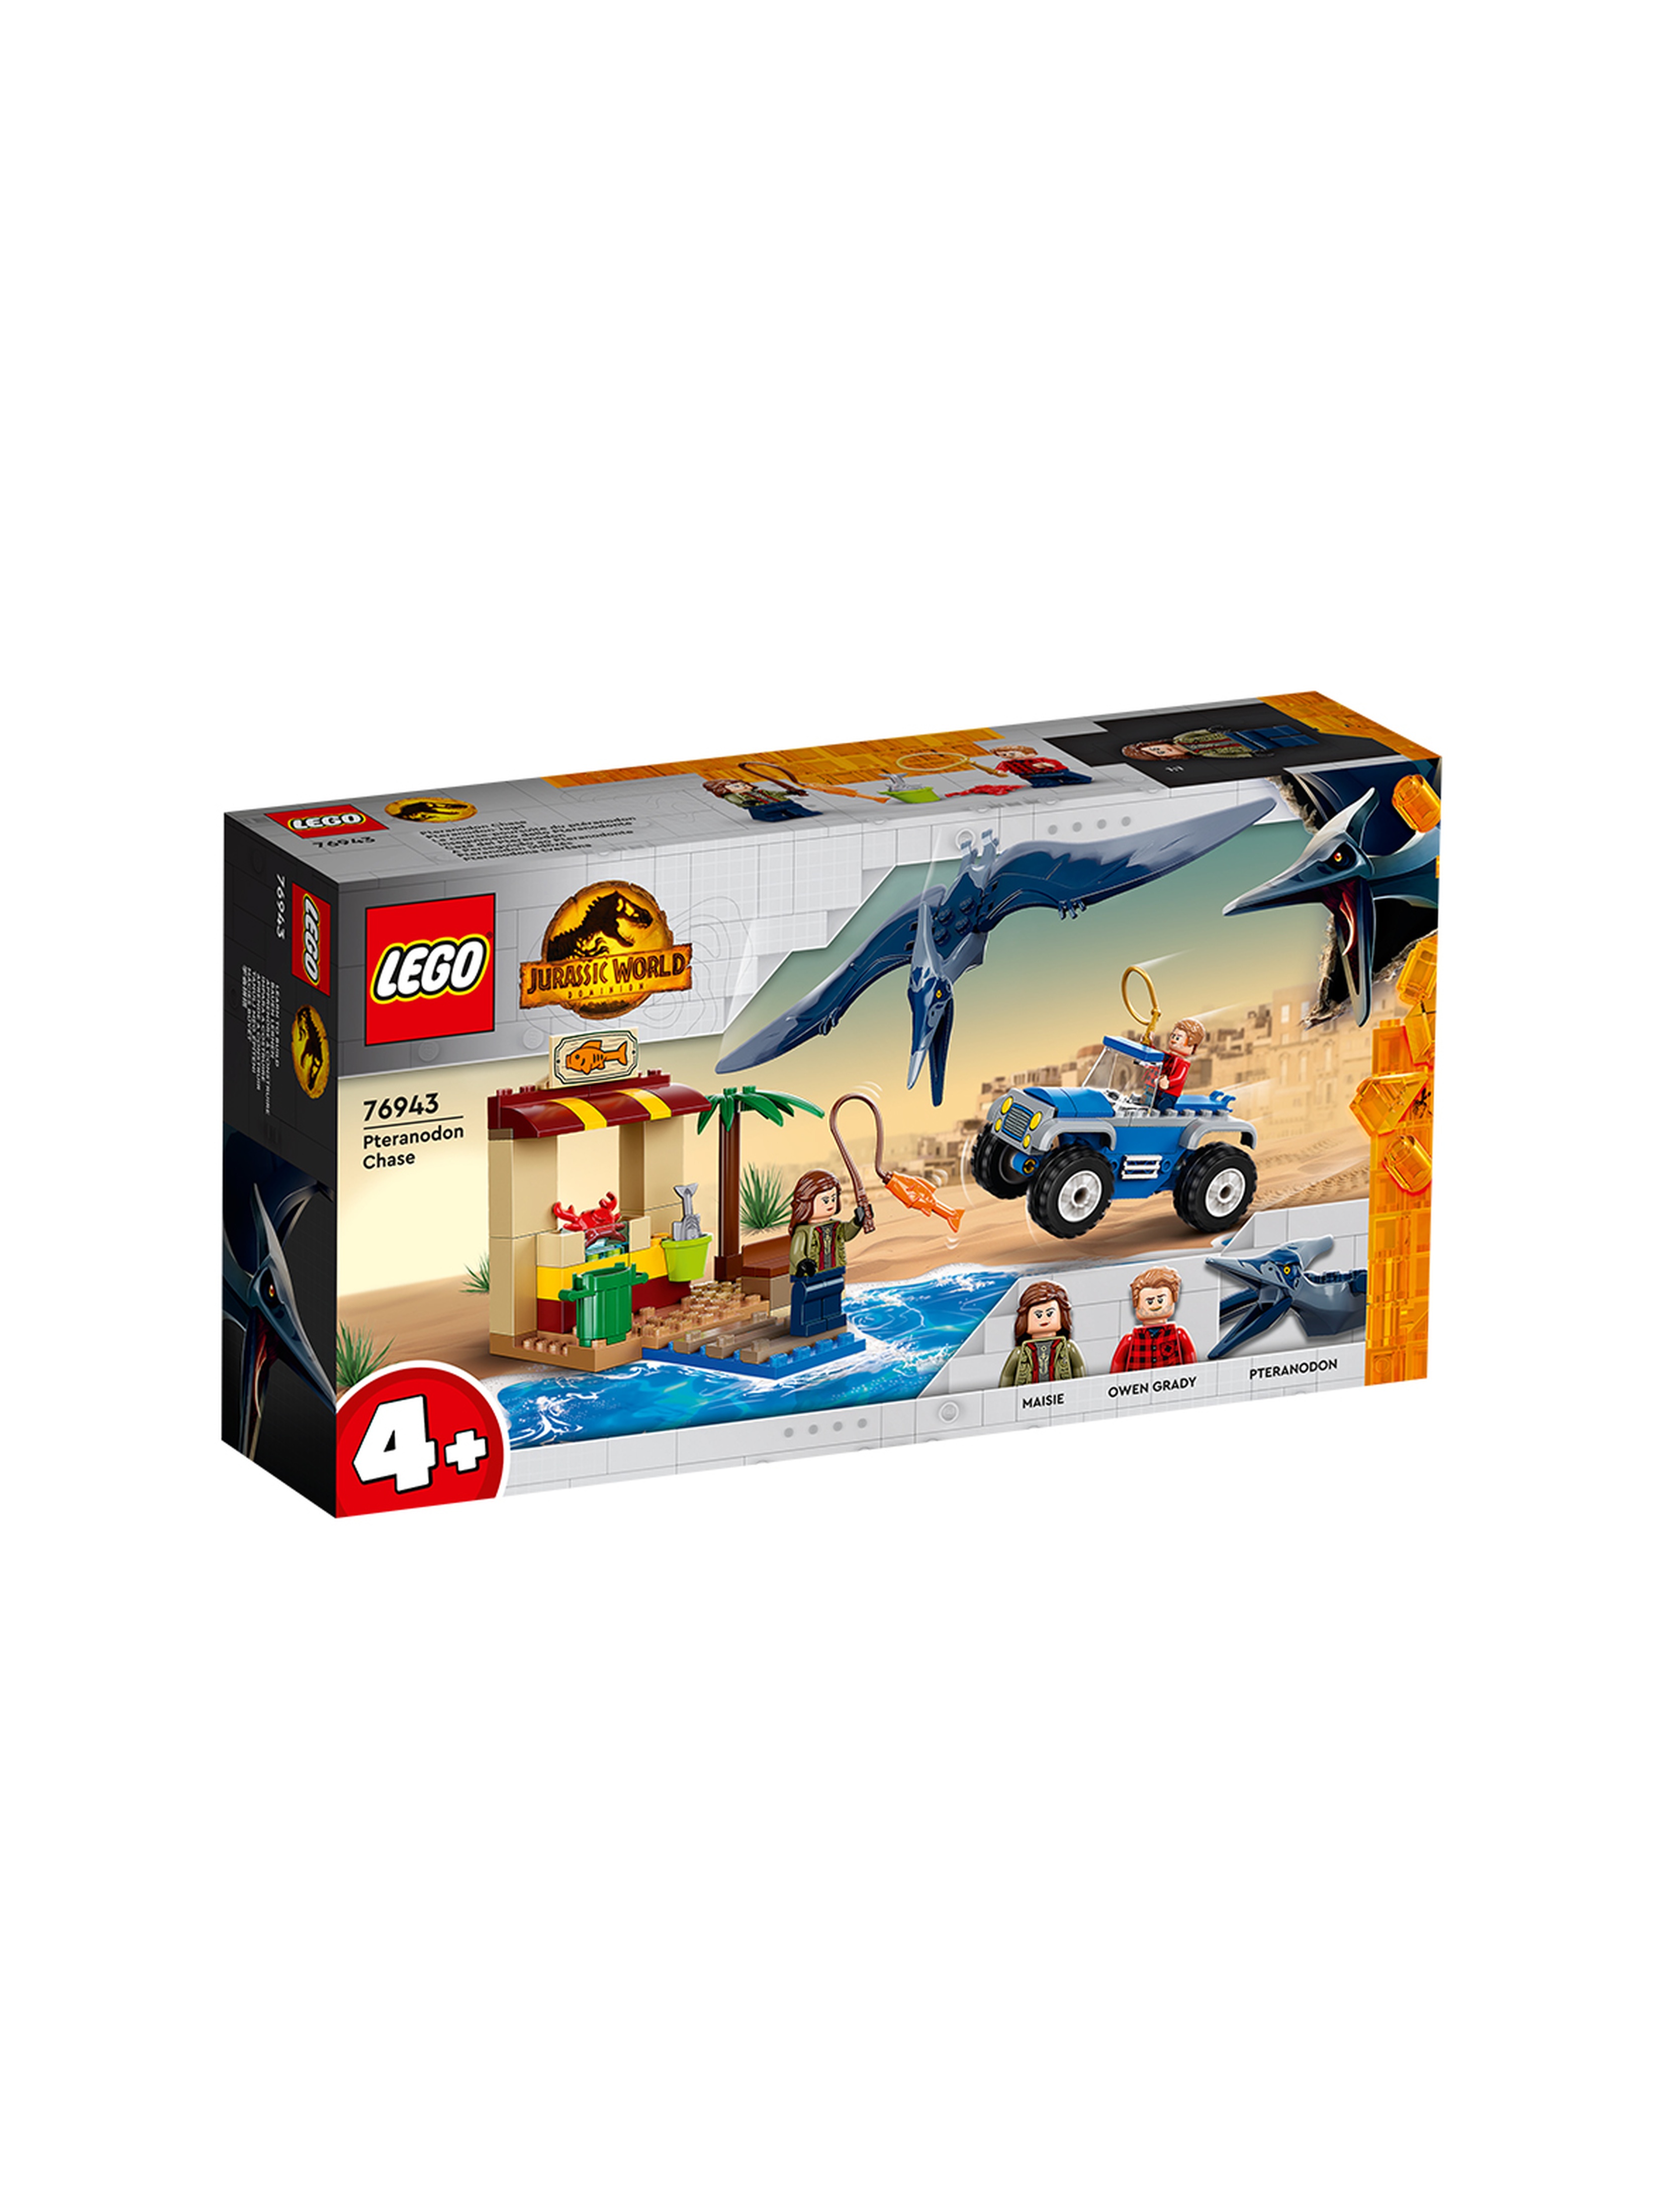 LEGO Jurassic World - Pościg za pteranodonem 76943 - 94 elementy, wiek 4+